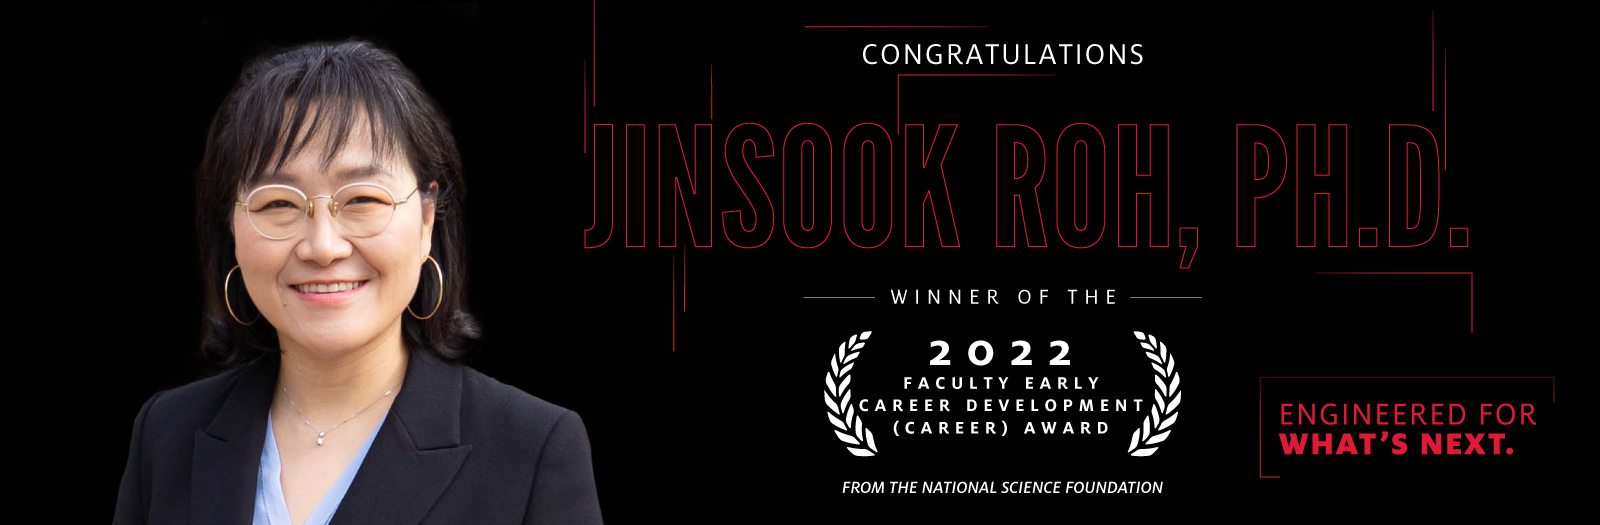 Congratulations Jinsook Roh